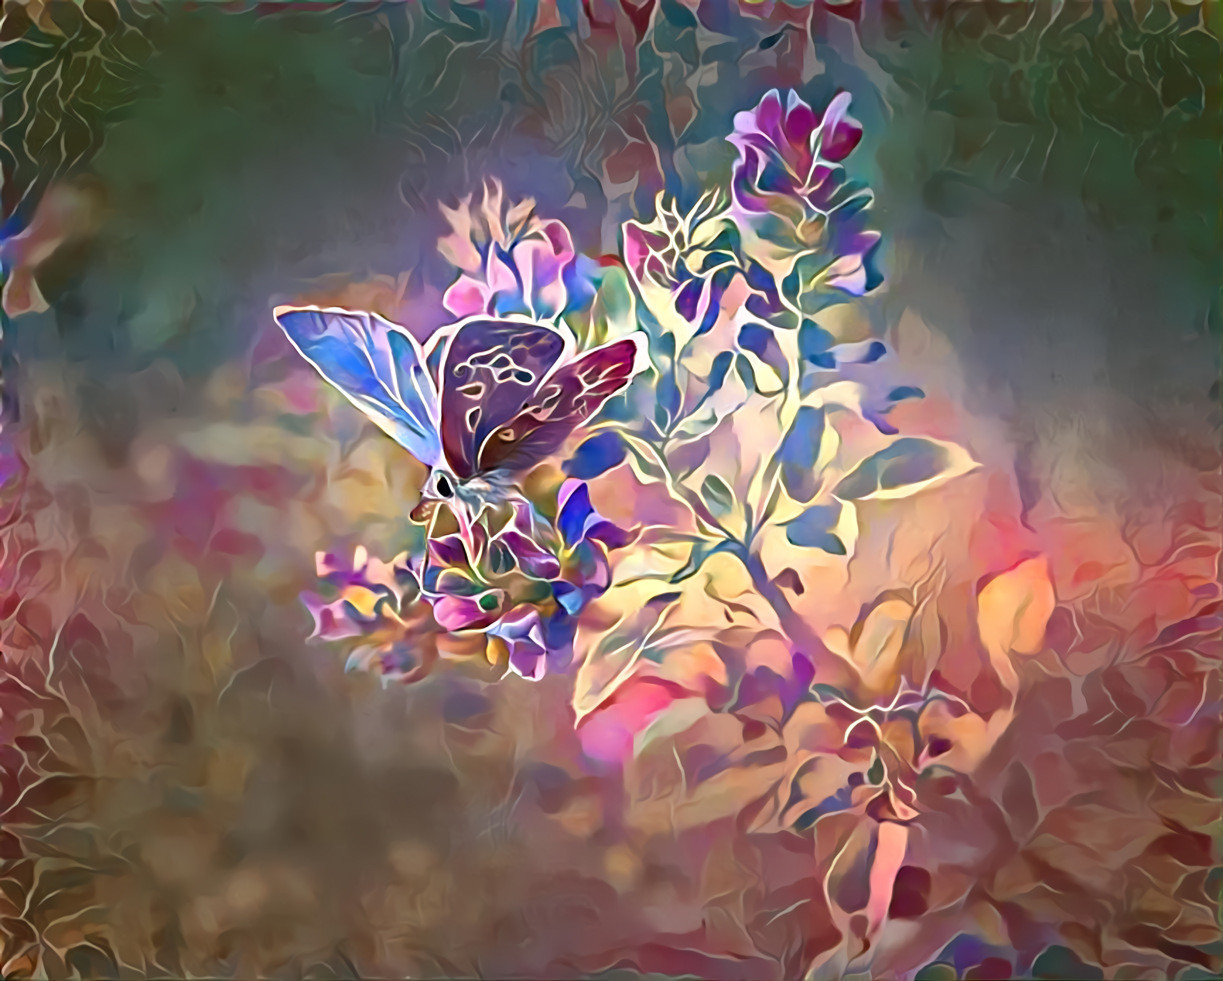 O' Butterfly